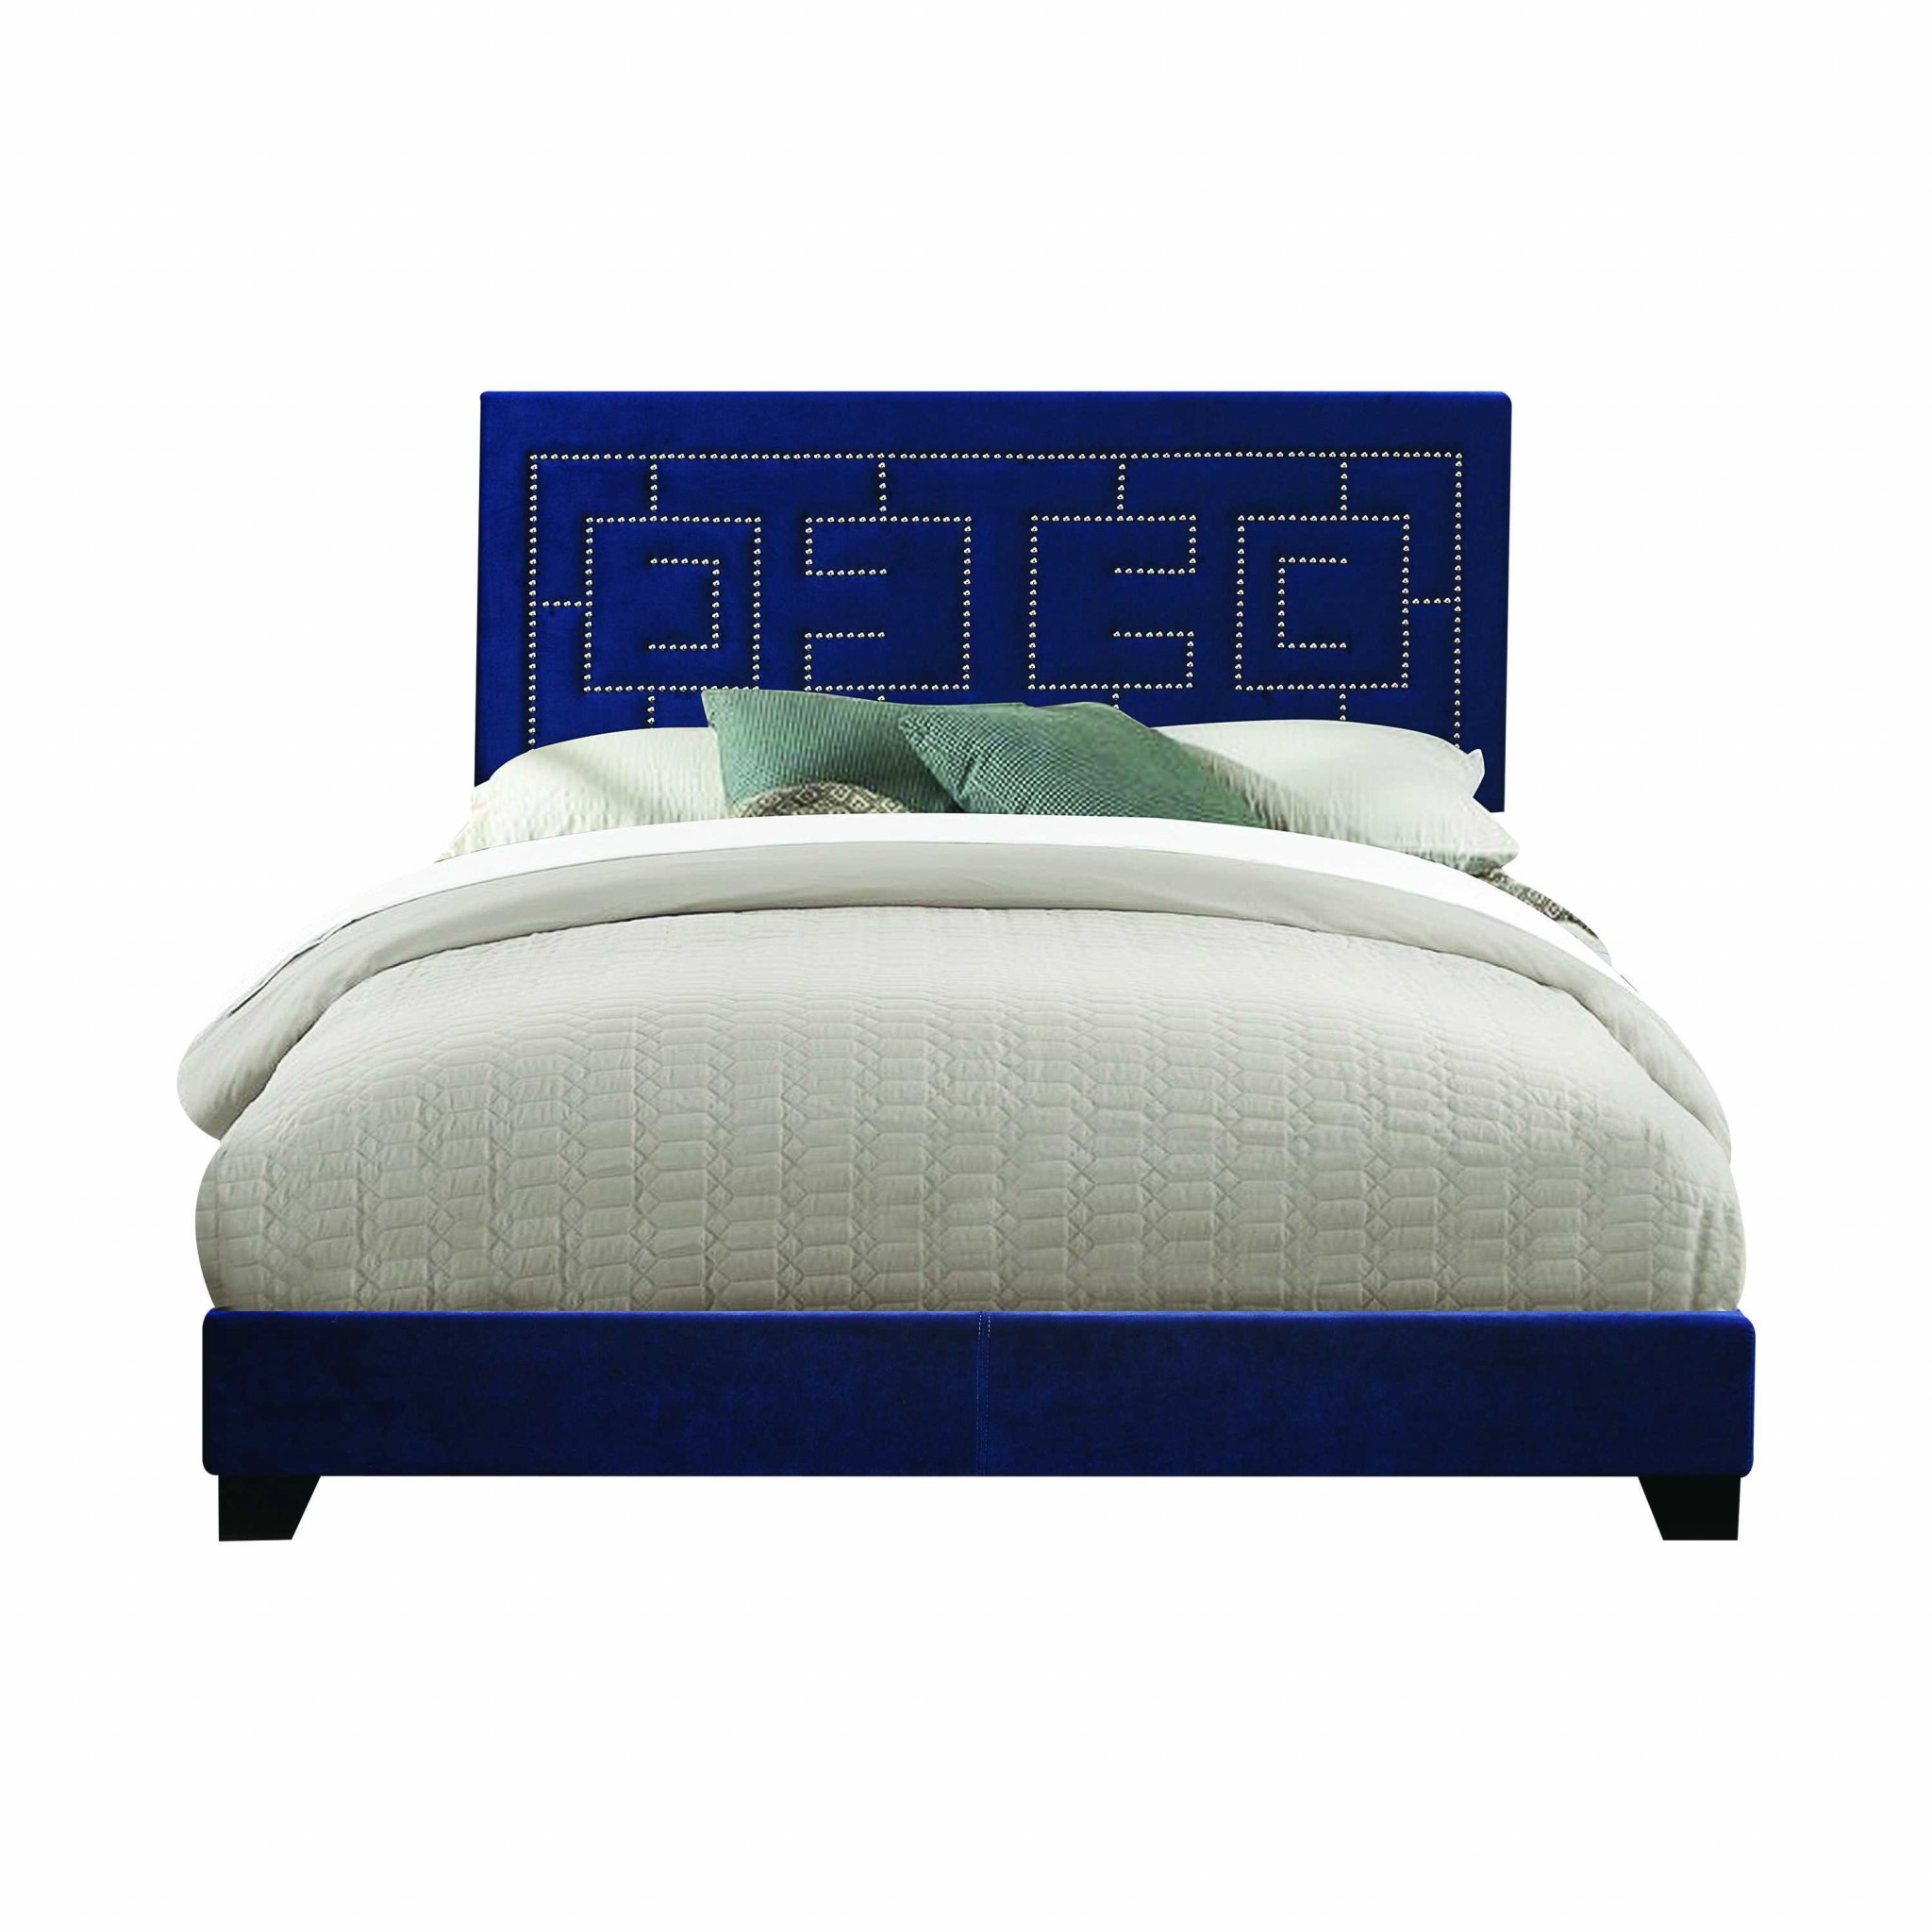 80" X 86" X 50" Dark Blue Velvet Upholstered Bed Wood Leg Eastern King Bed